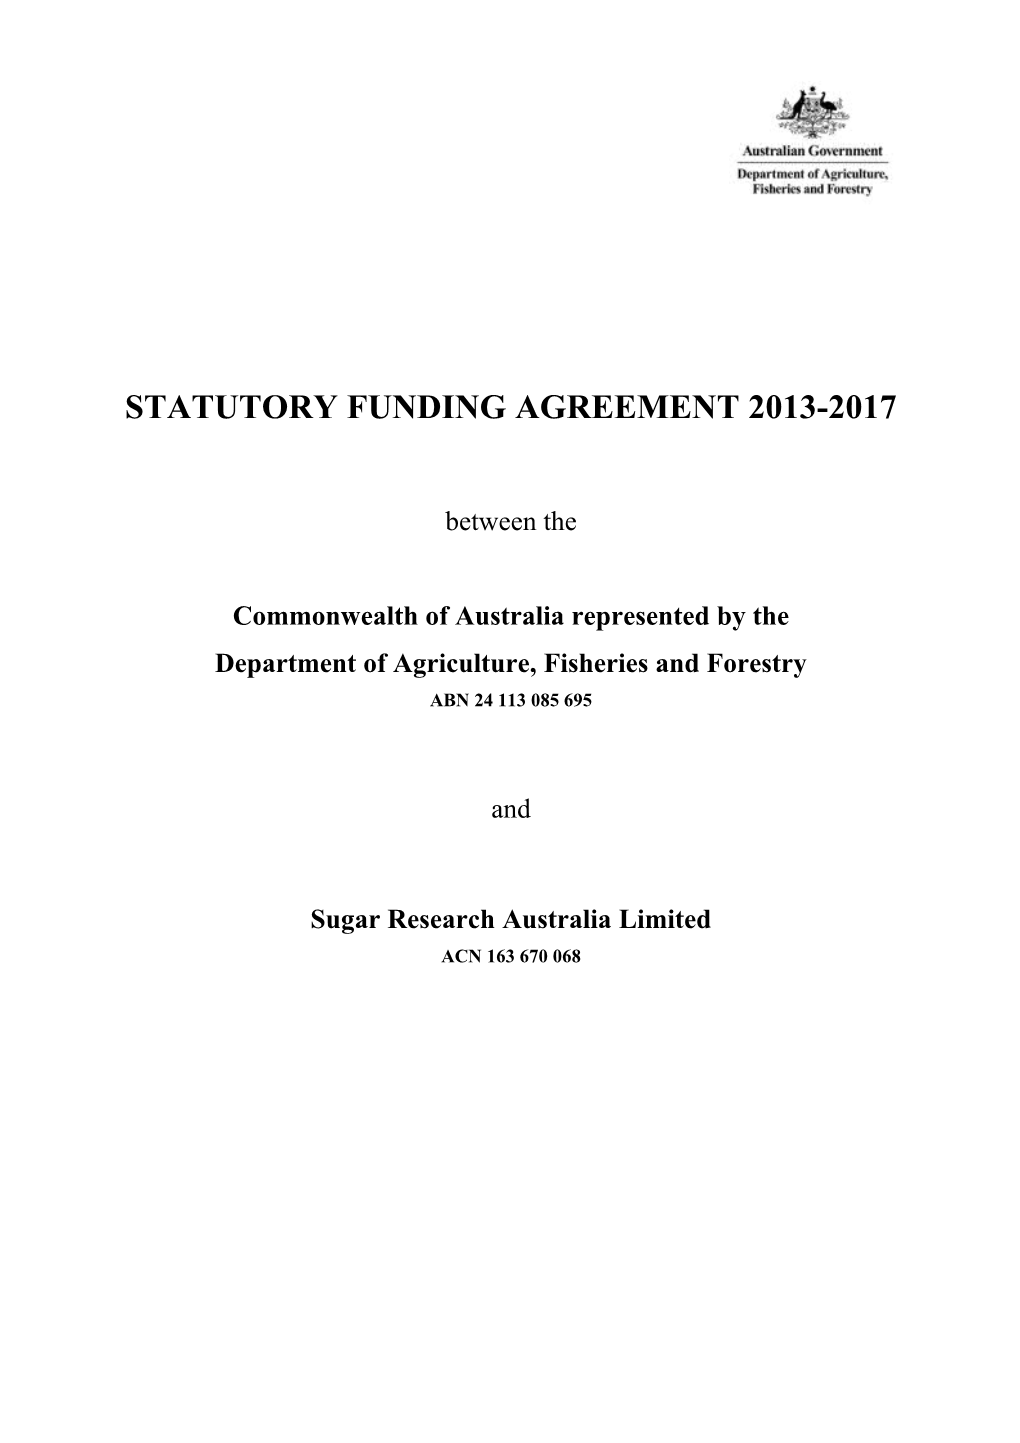 Statutory Funding Agreement 2013-2017